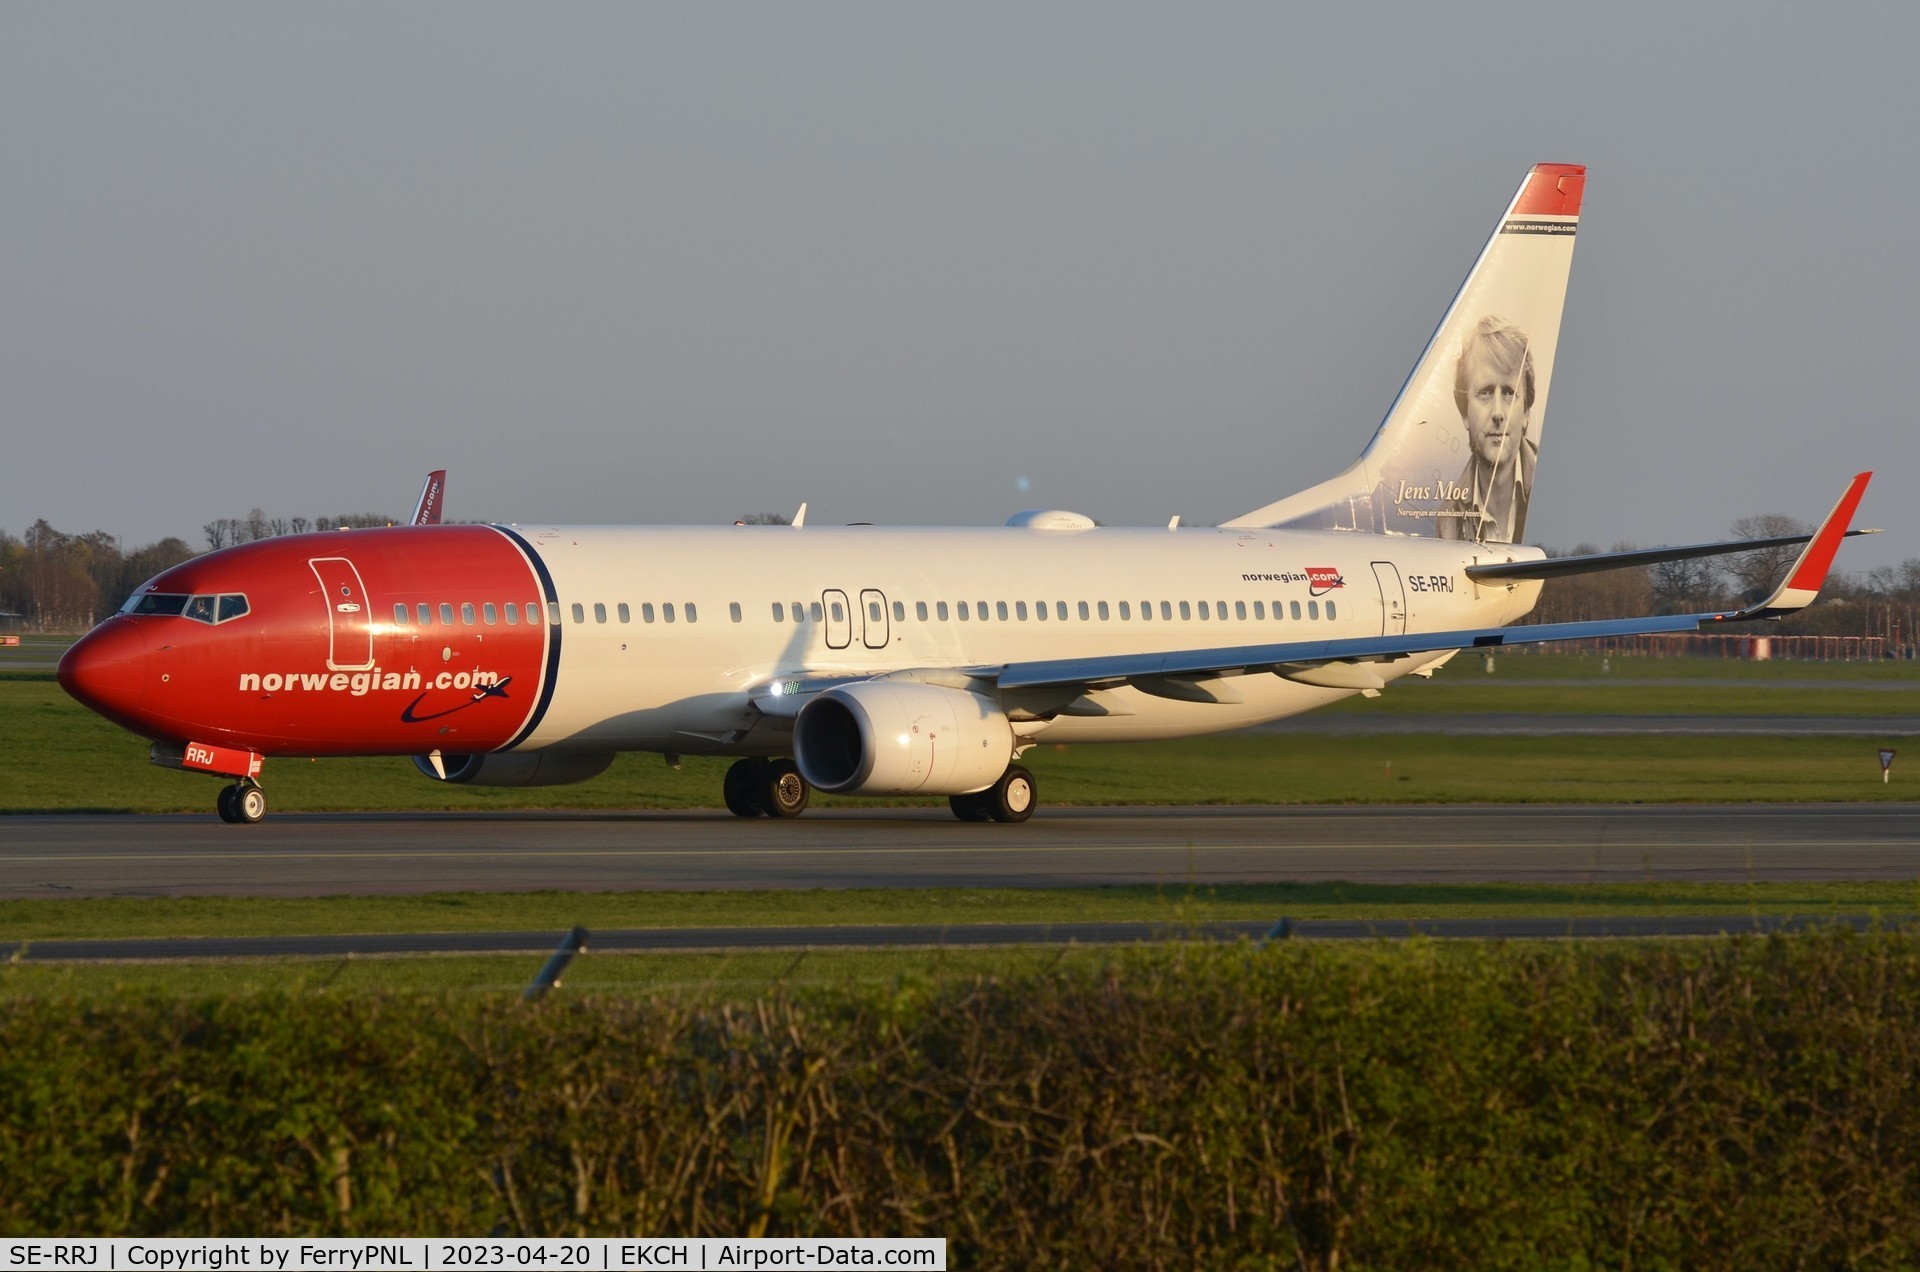 SE-RRJ, 2018 Boeing 737-8JP C/N 42094, Norwegian B738 vacating the runway